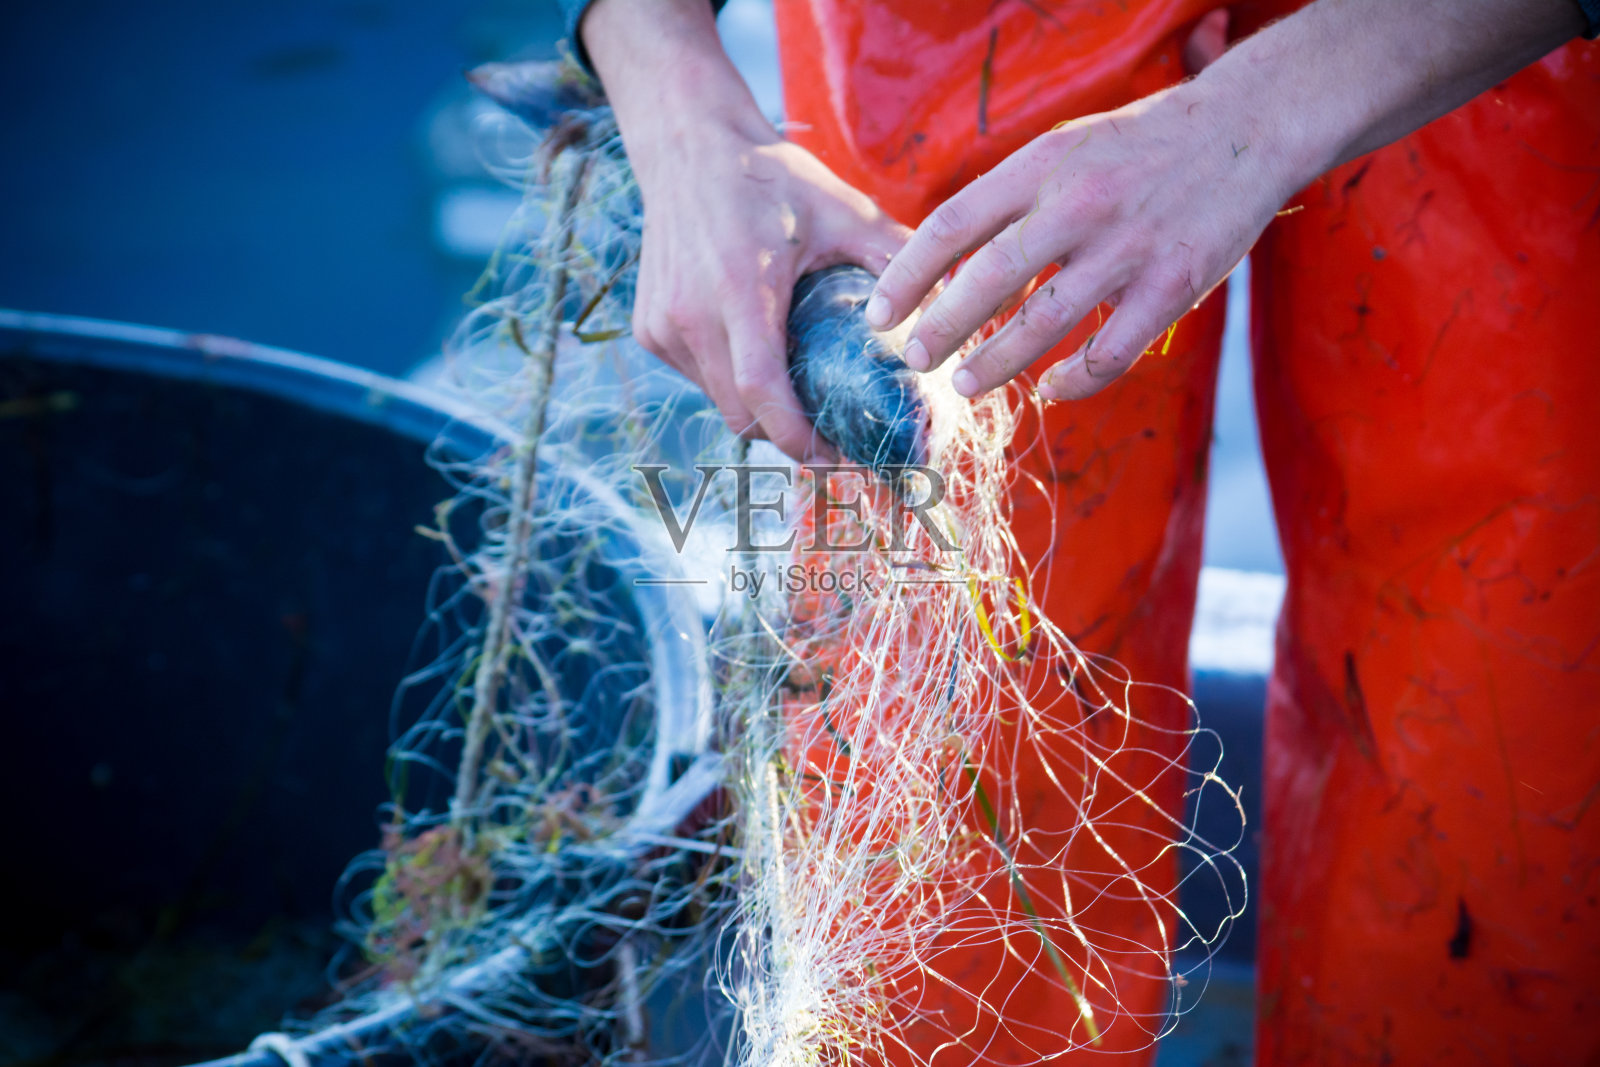 渔夫在清理鱼网时照片摄影图片